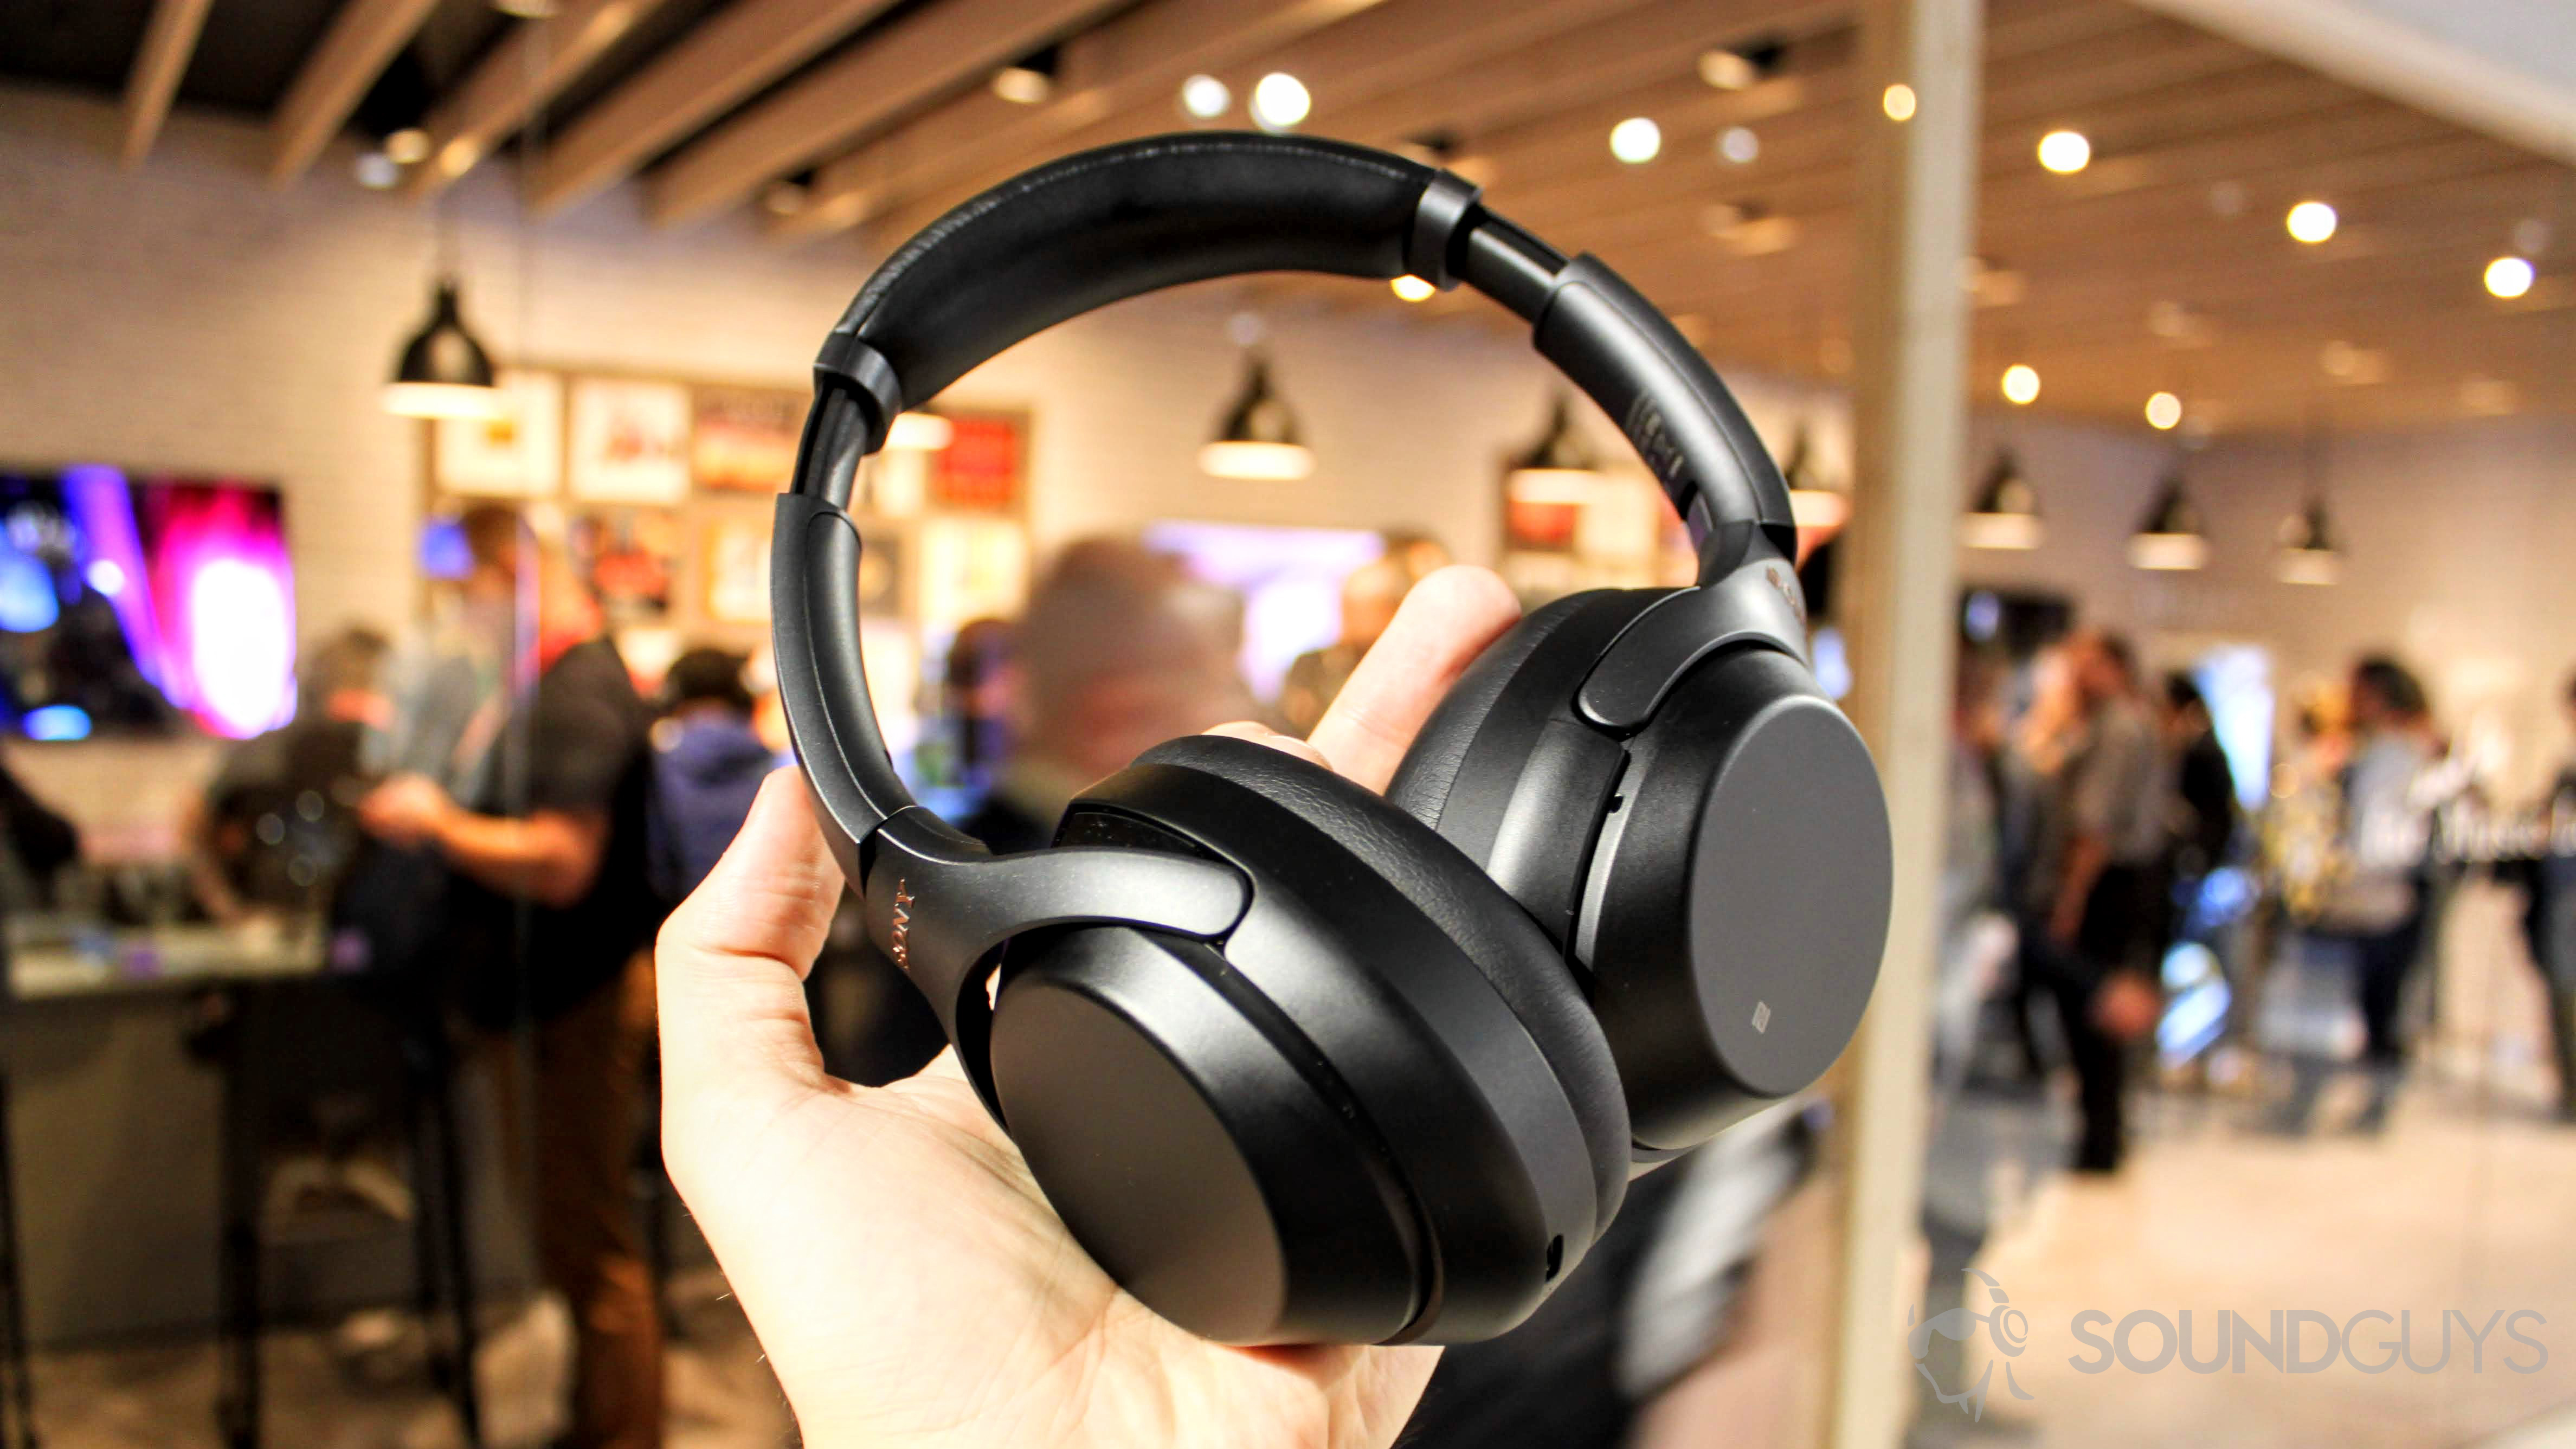 オーディオ機器 ヘッドフォン Sony WH-1000XM3 hands on: The new best noise-cancelling cans?